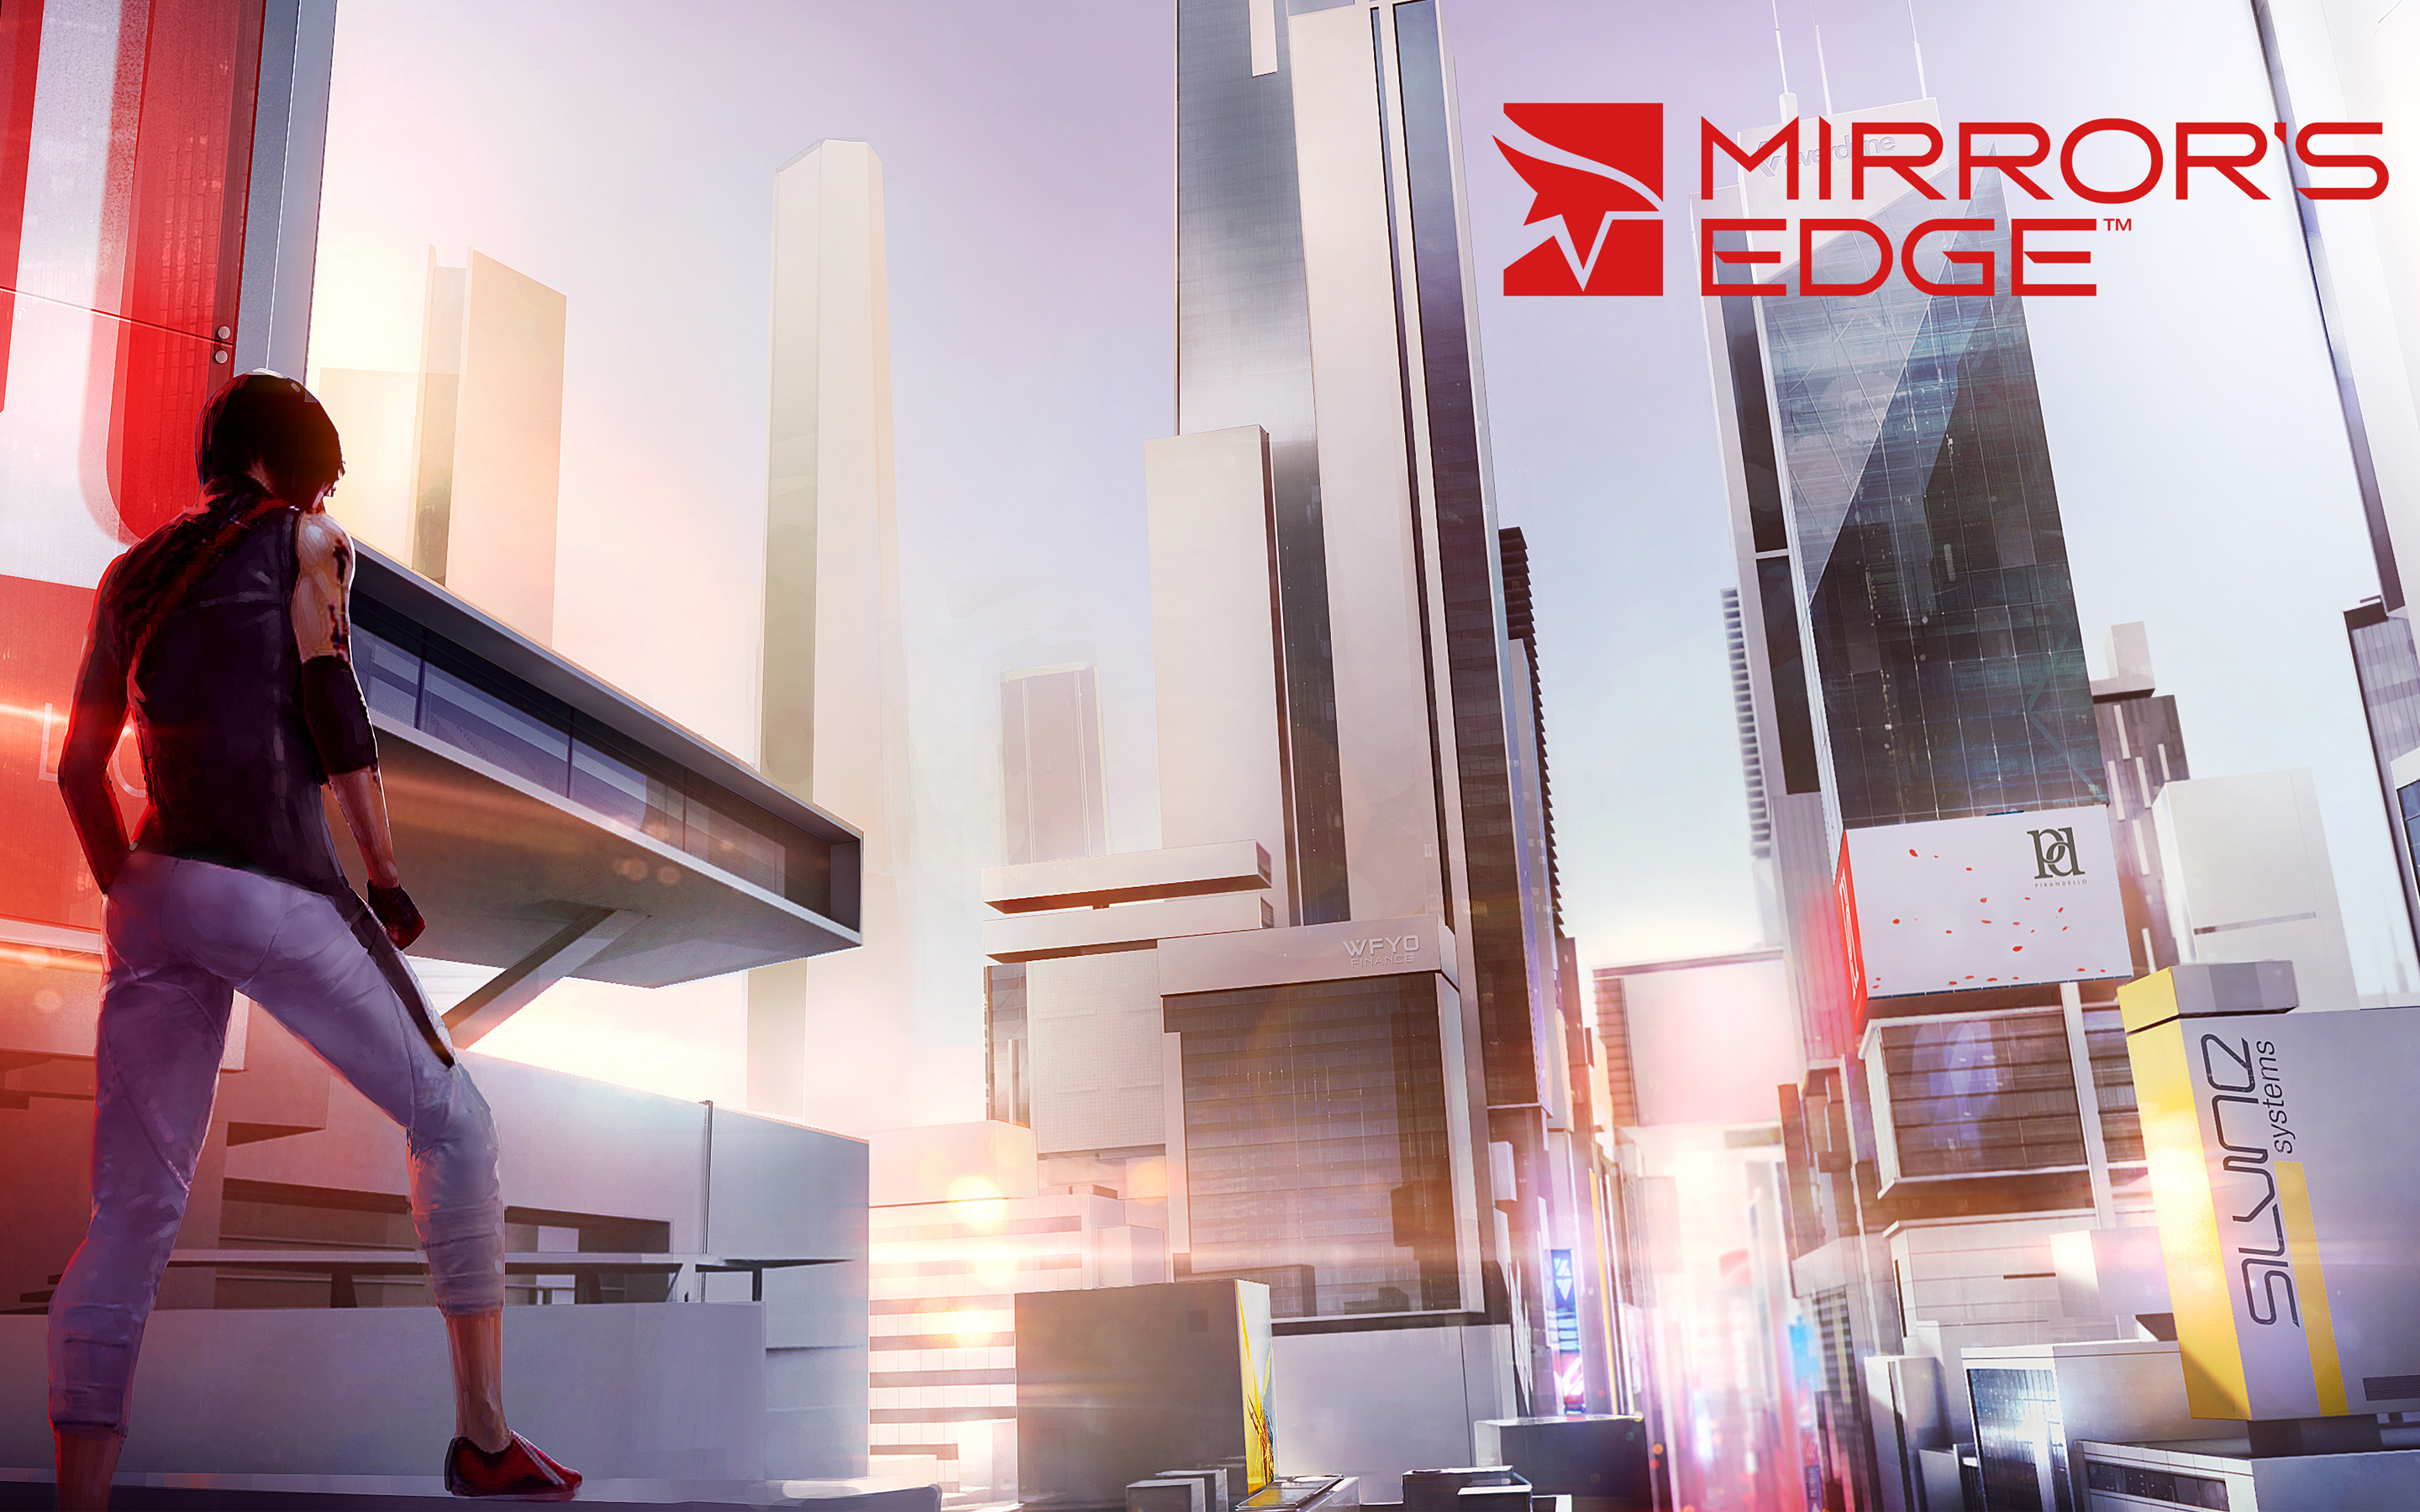 Descarga gratuita de fondo de pantalla para móvil de Mirror's Edge, Videojuego.